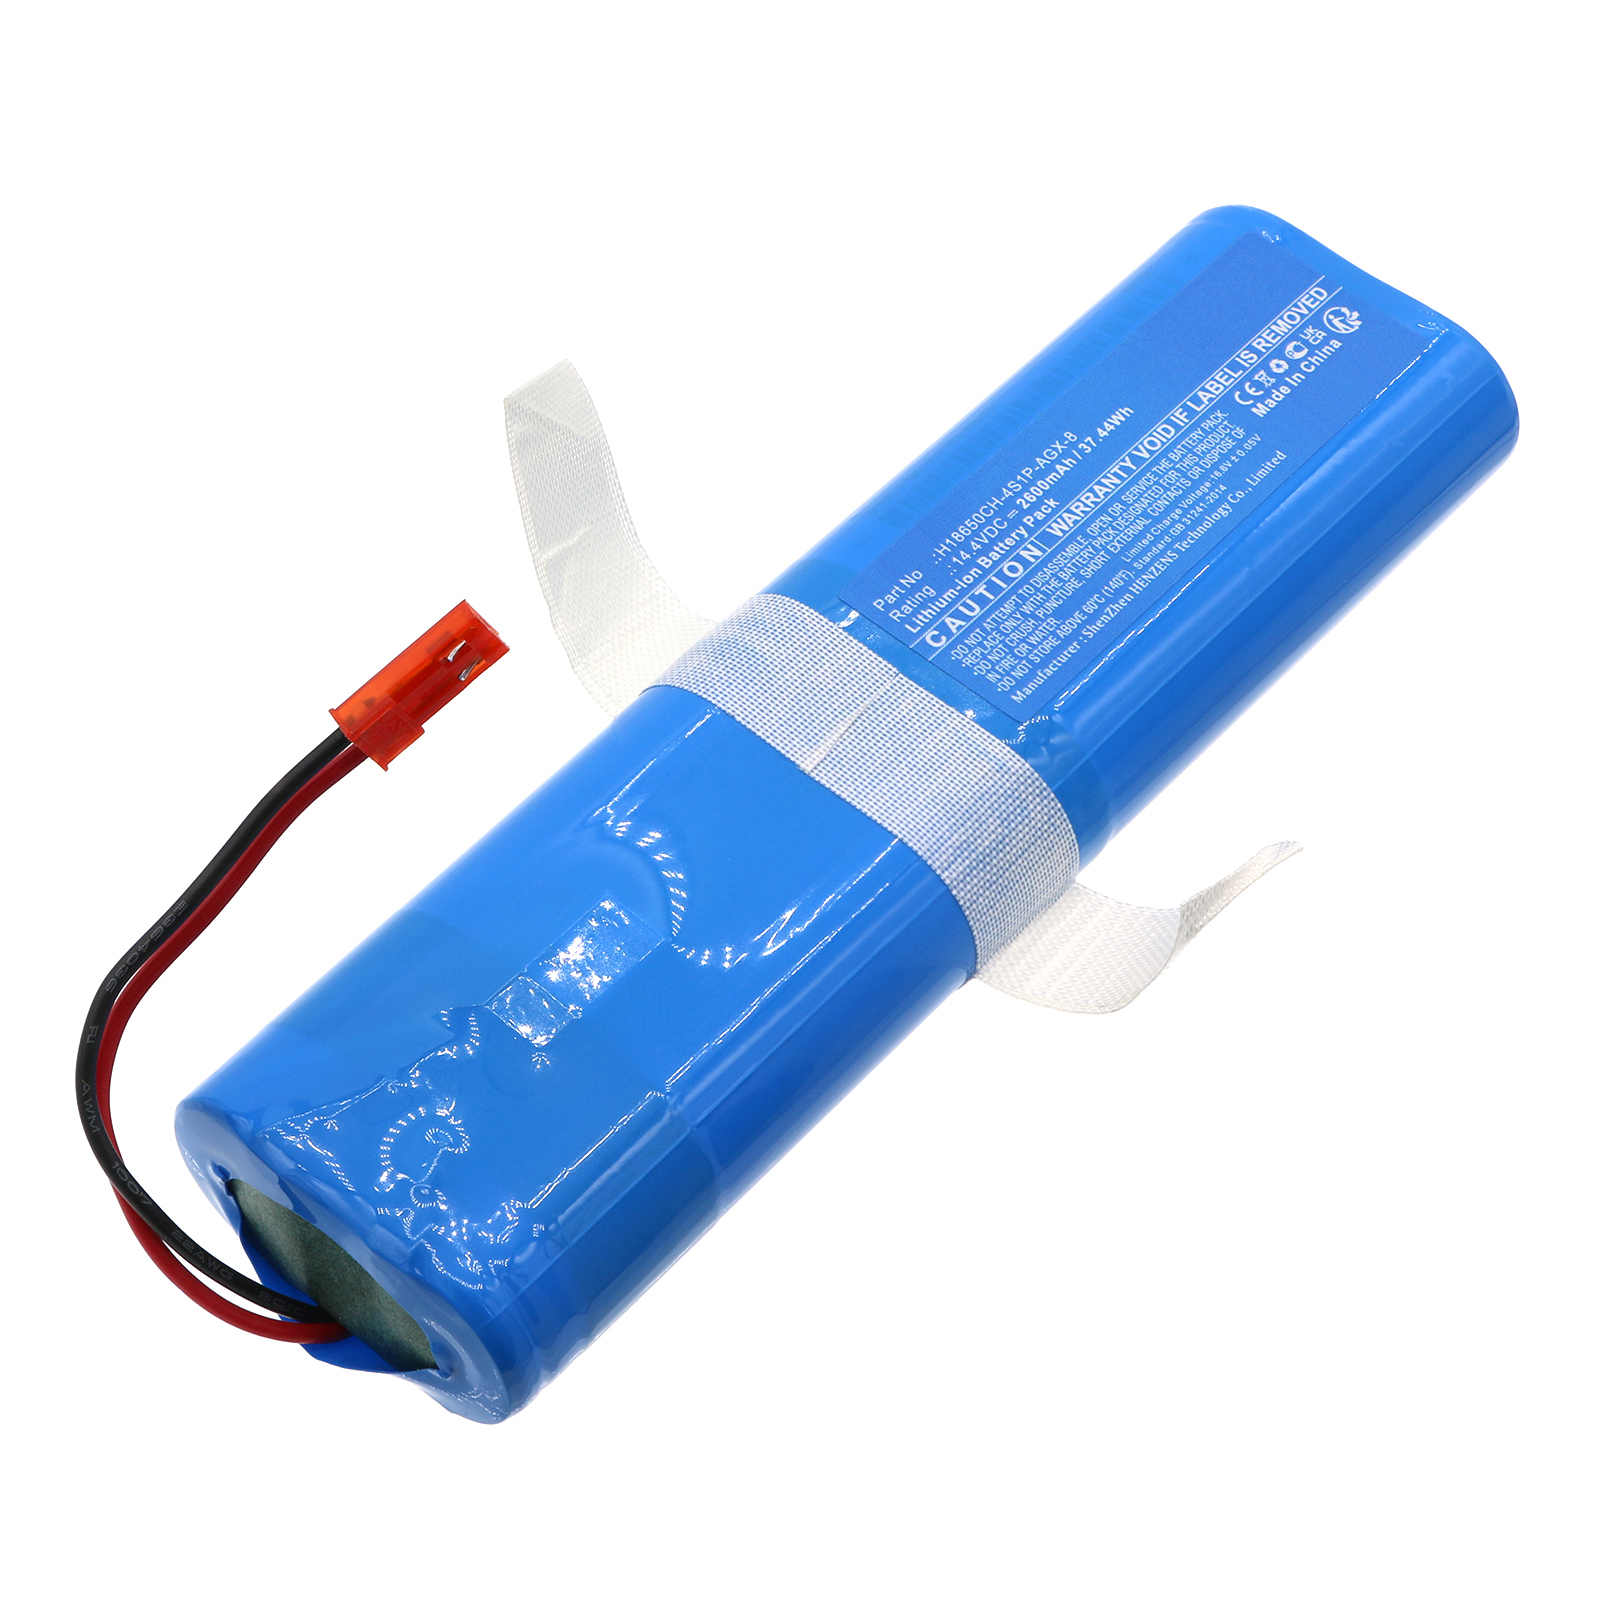 Batteries for ETAVacuum Cleaner